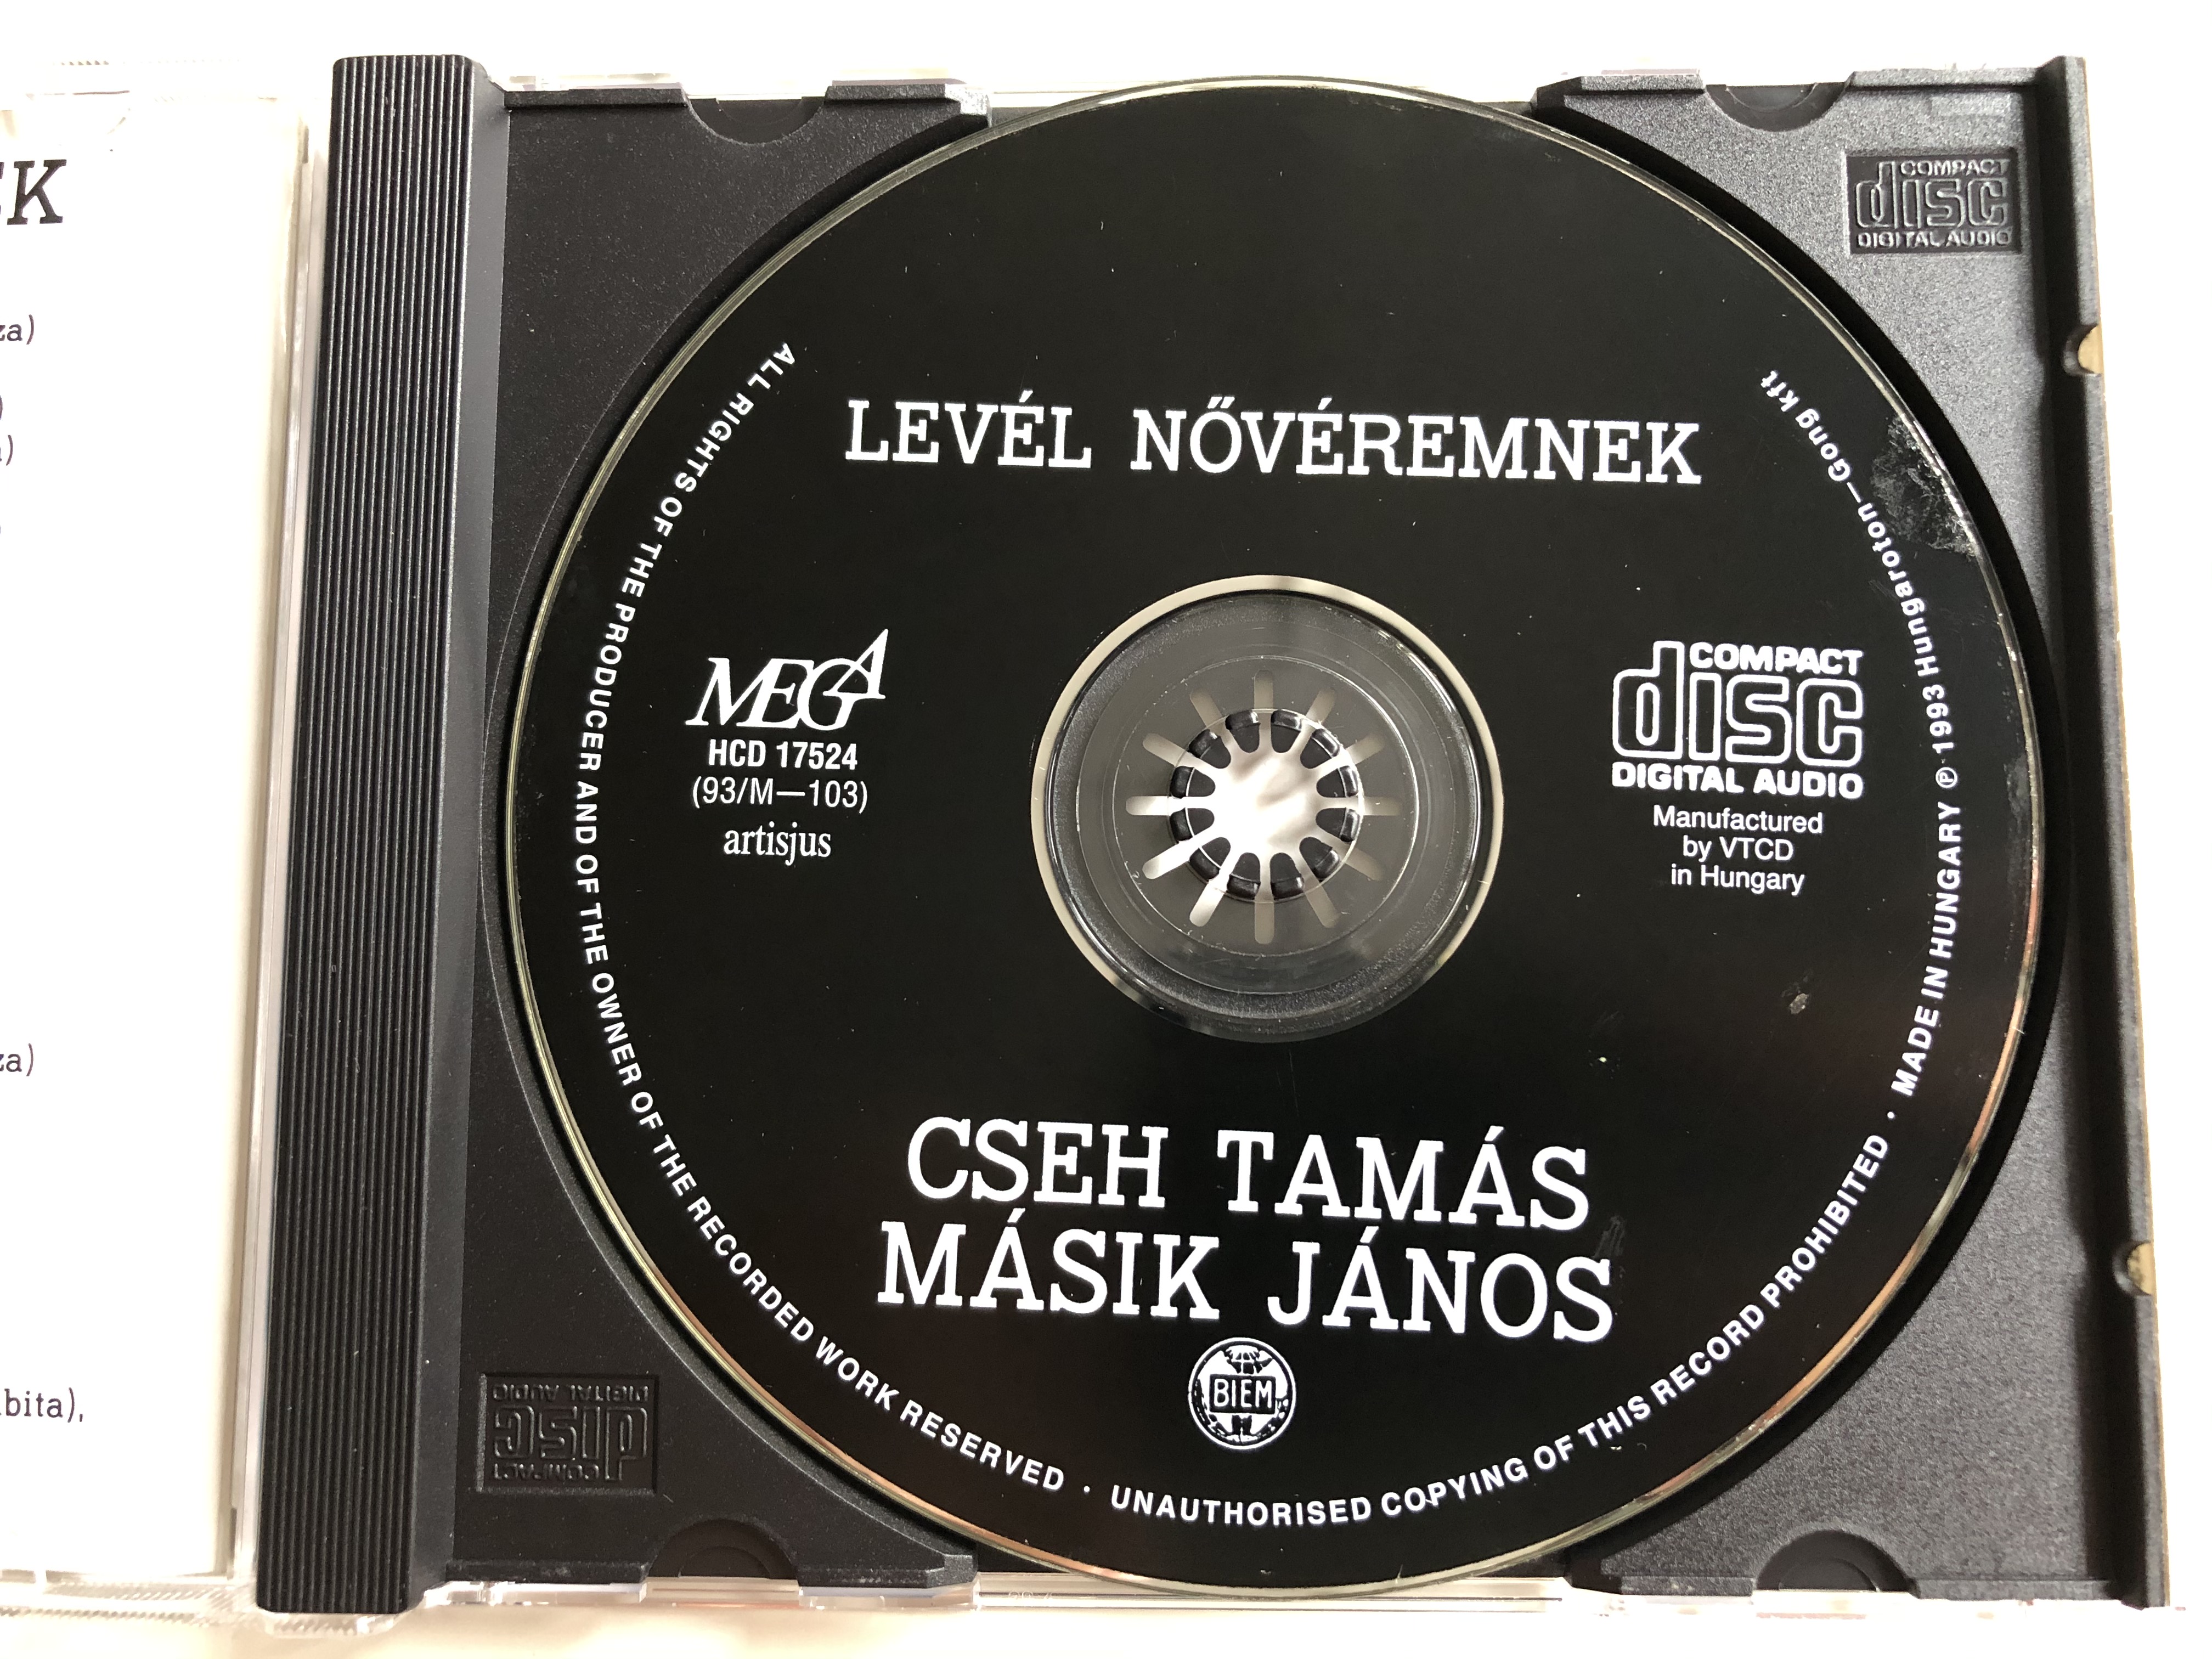 lev-l-n-v-remnek-cseh-tam-s-m-sik-j-nos-mega-audio-cd-1993-hcd-17524-93m-103-3-.jpg